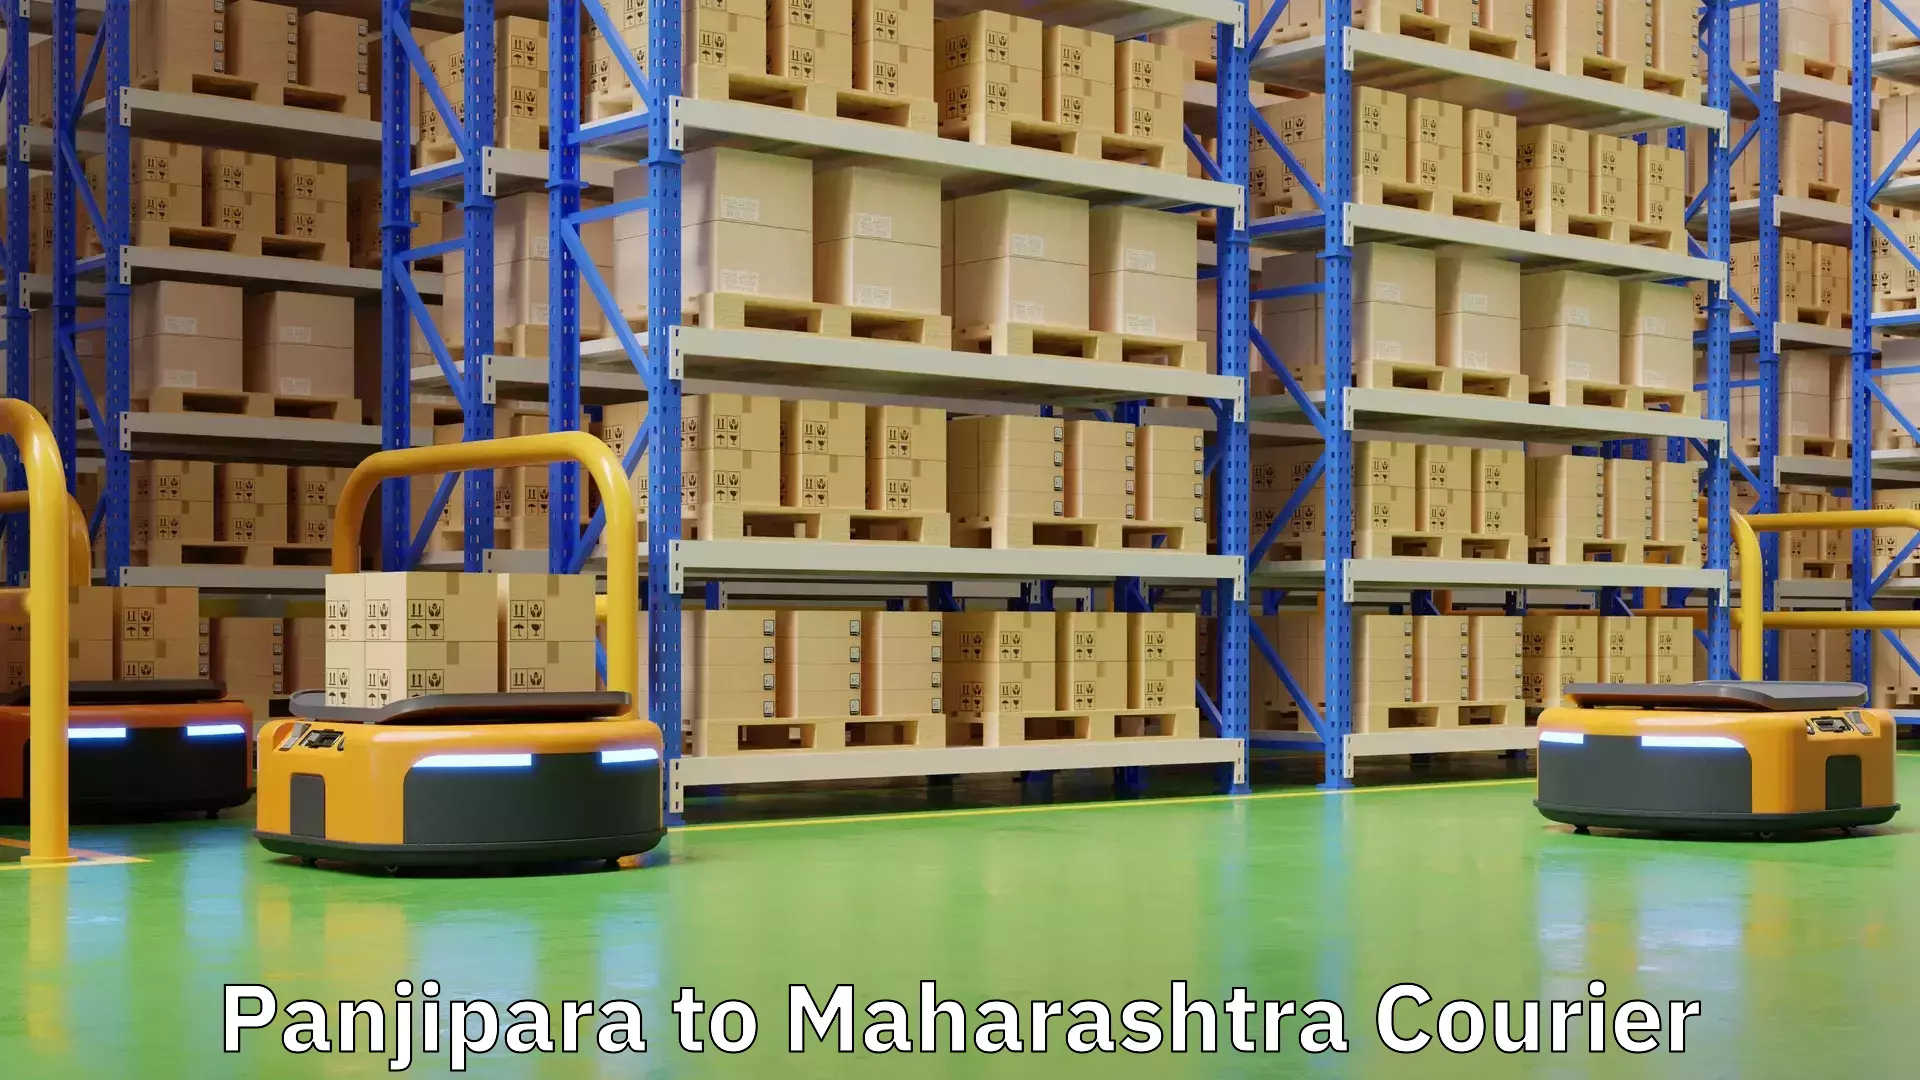 Courier service partnerships Panjipara to Maharashtra